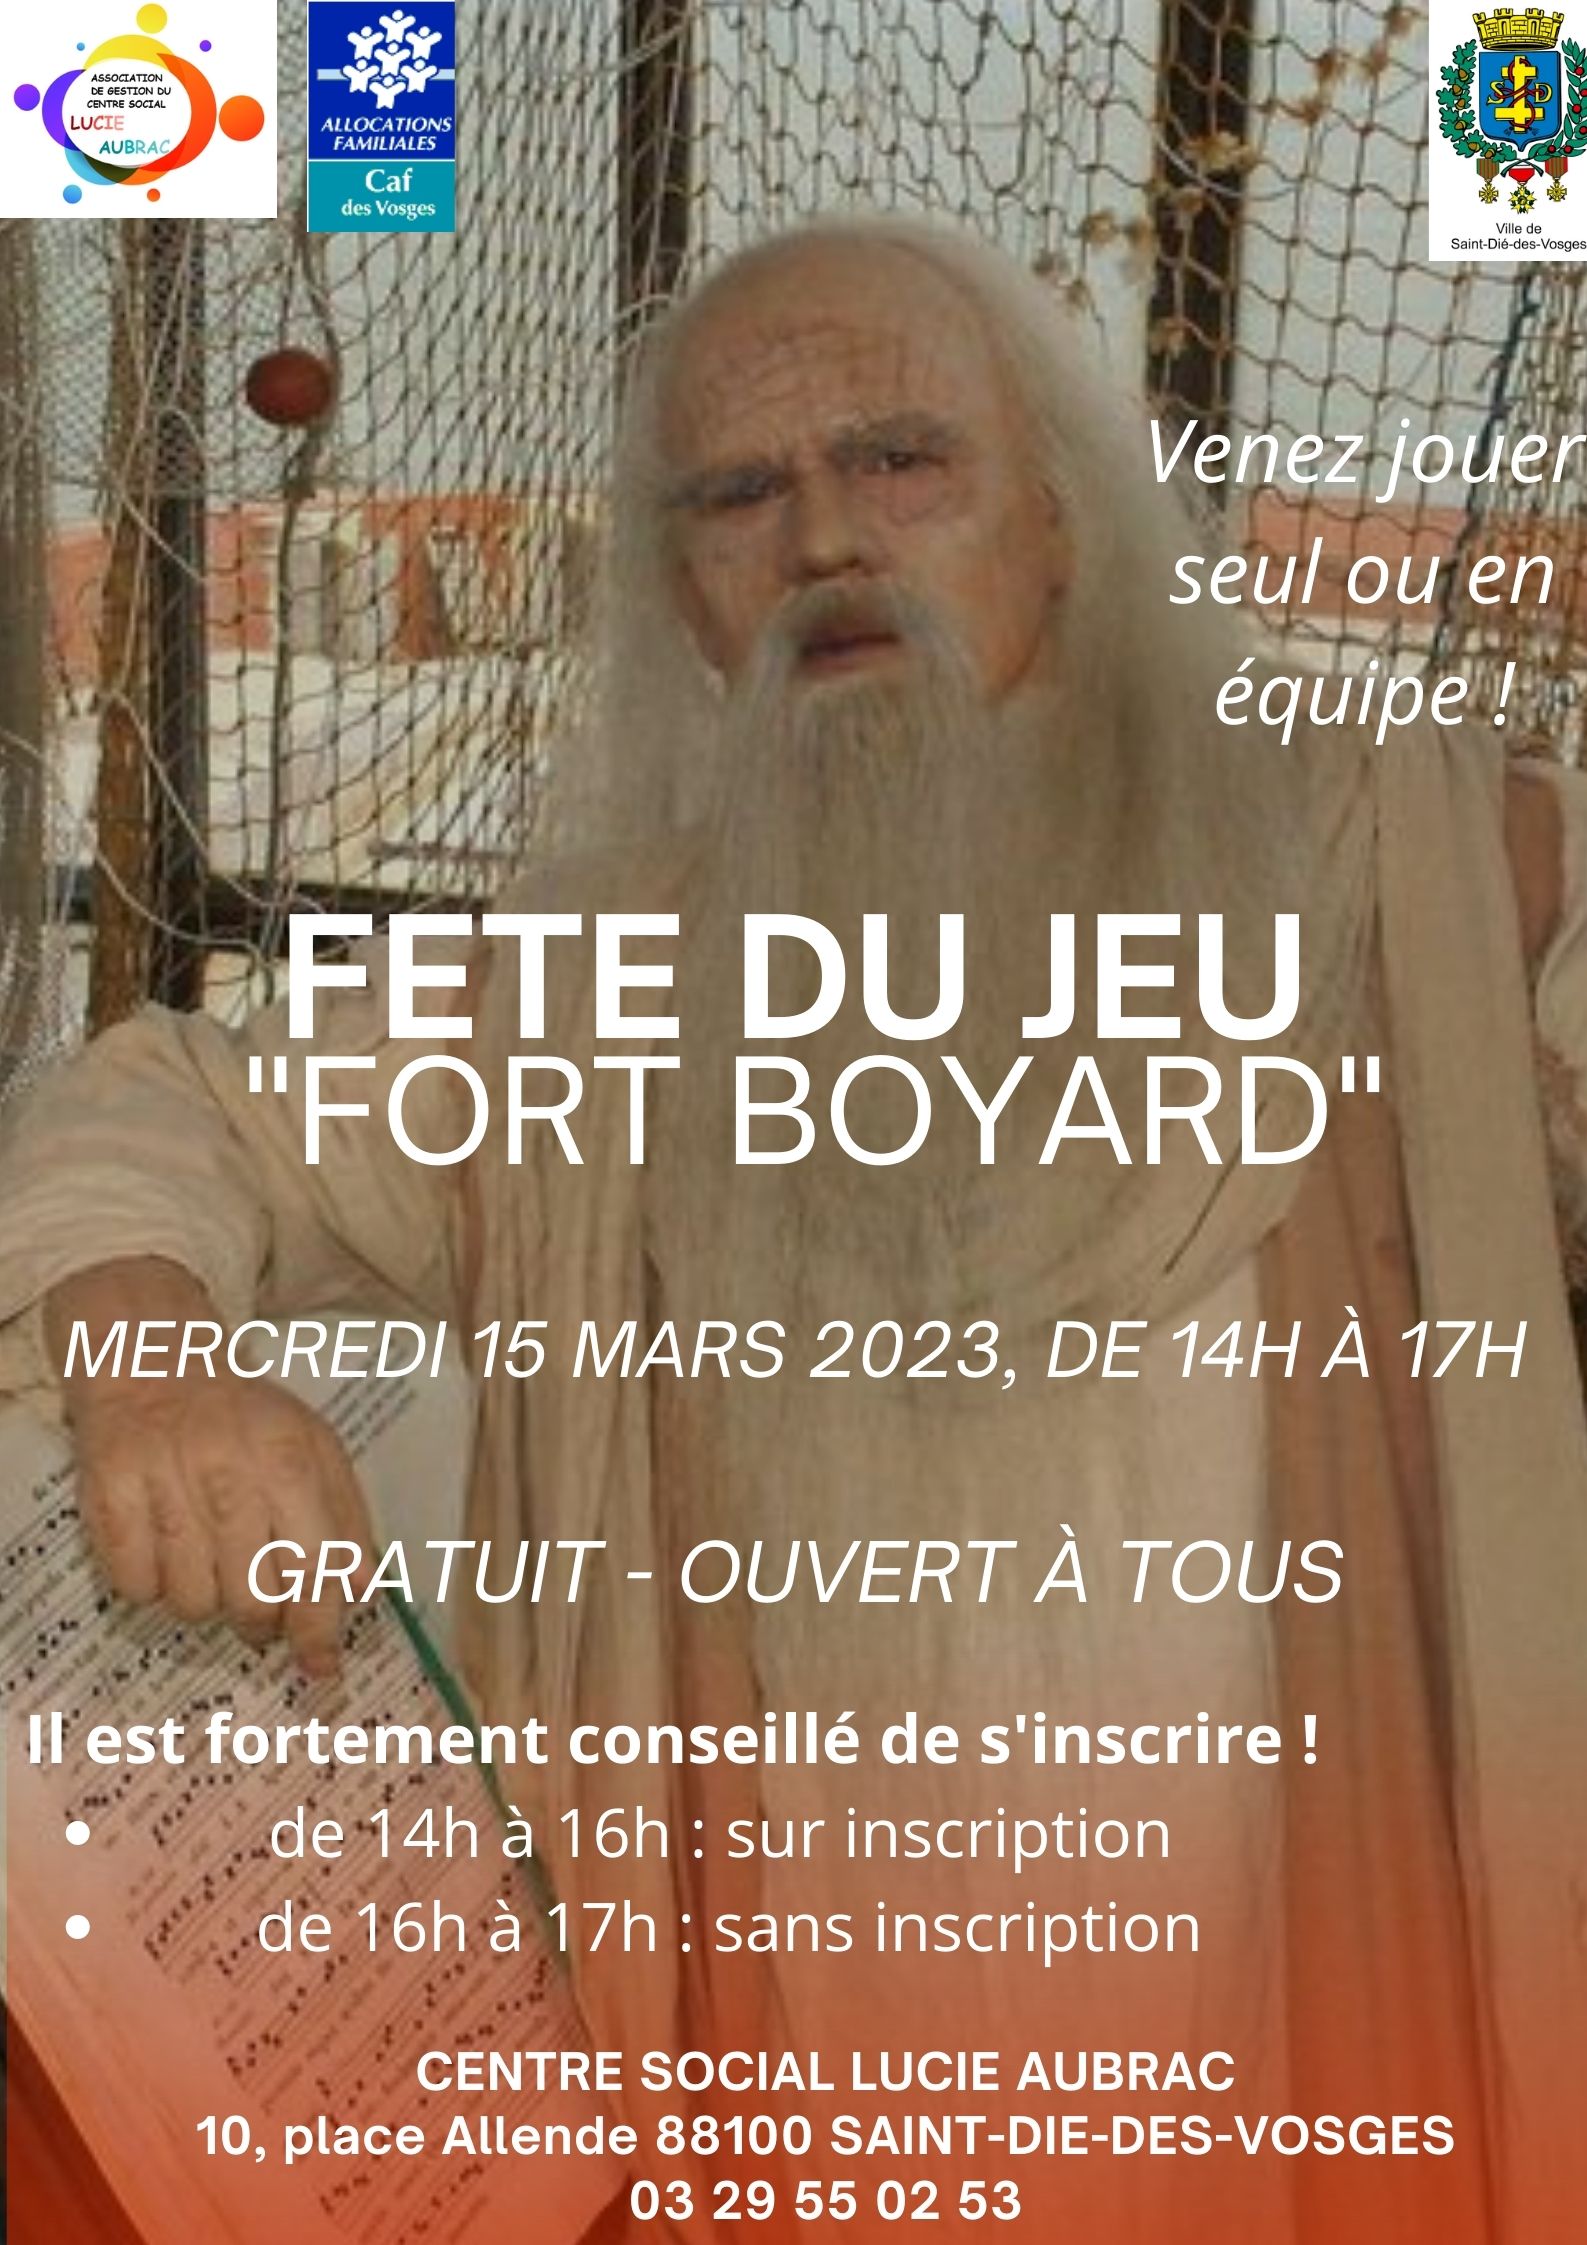 Fete du jeu Fort Boyard 15-03-2023